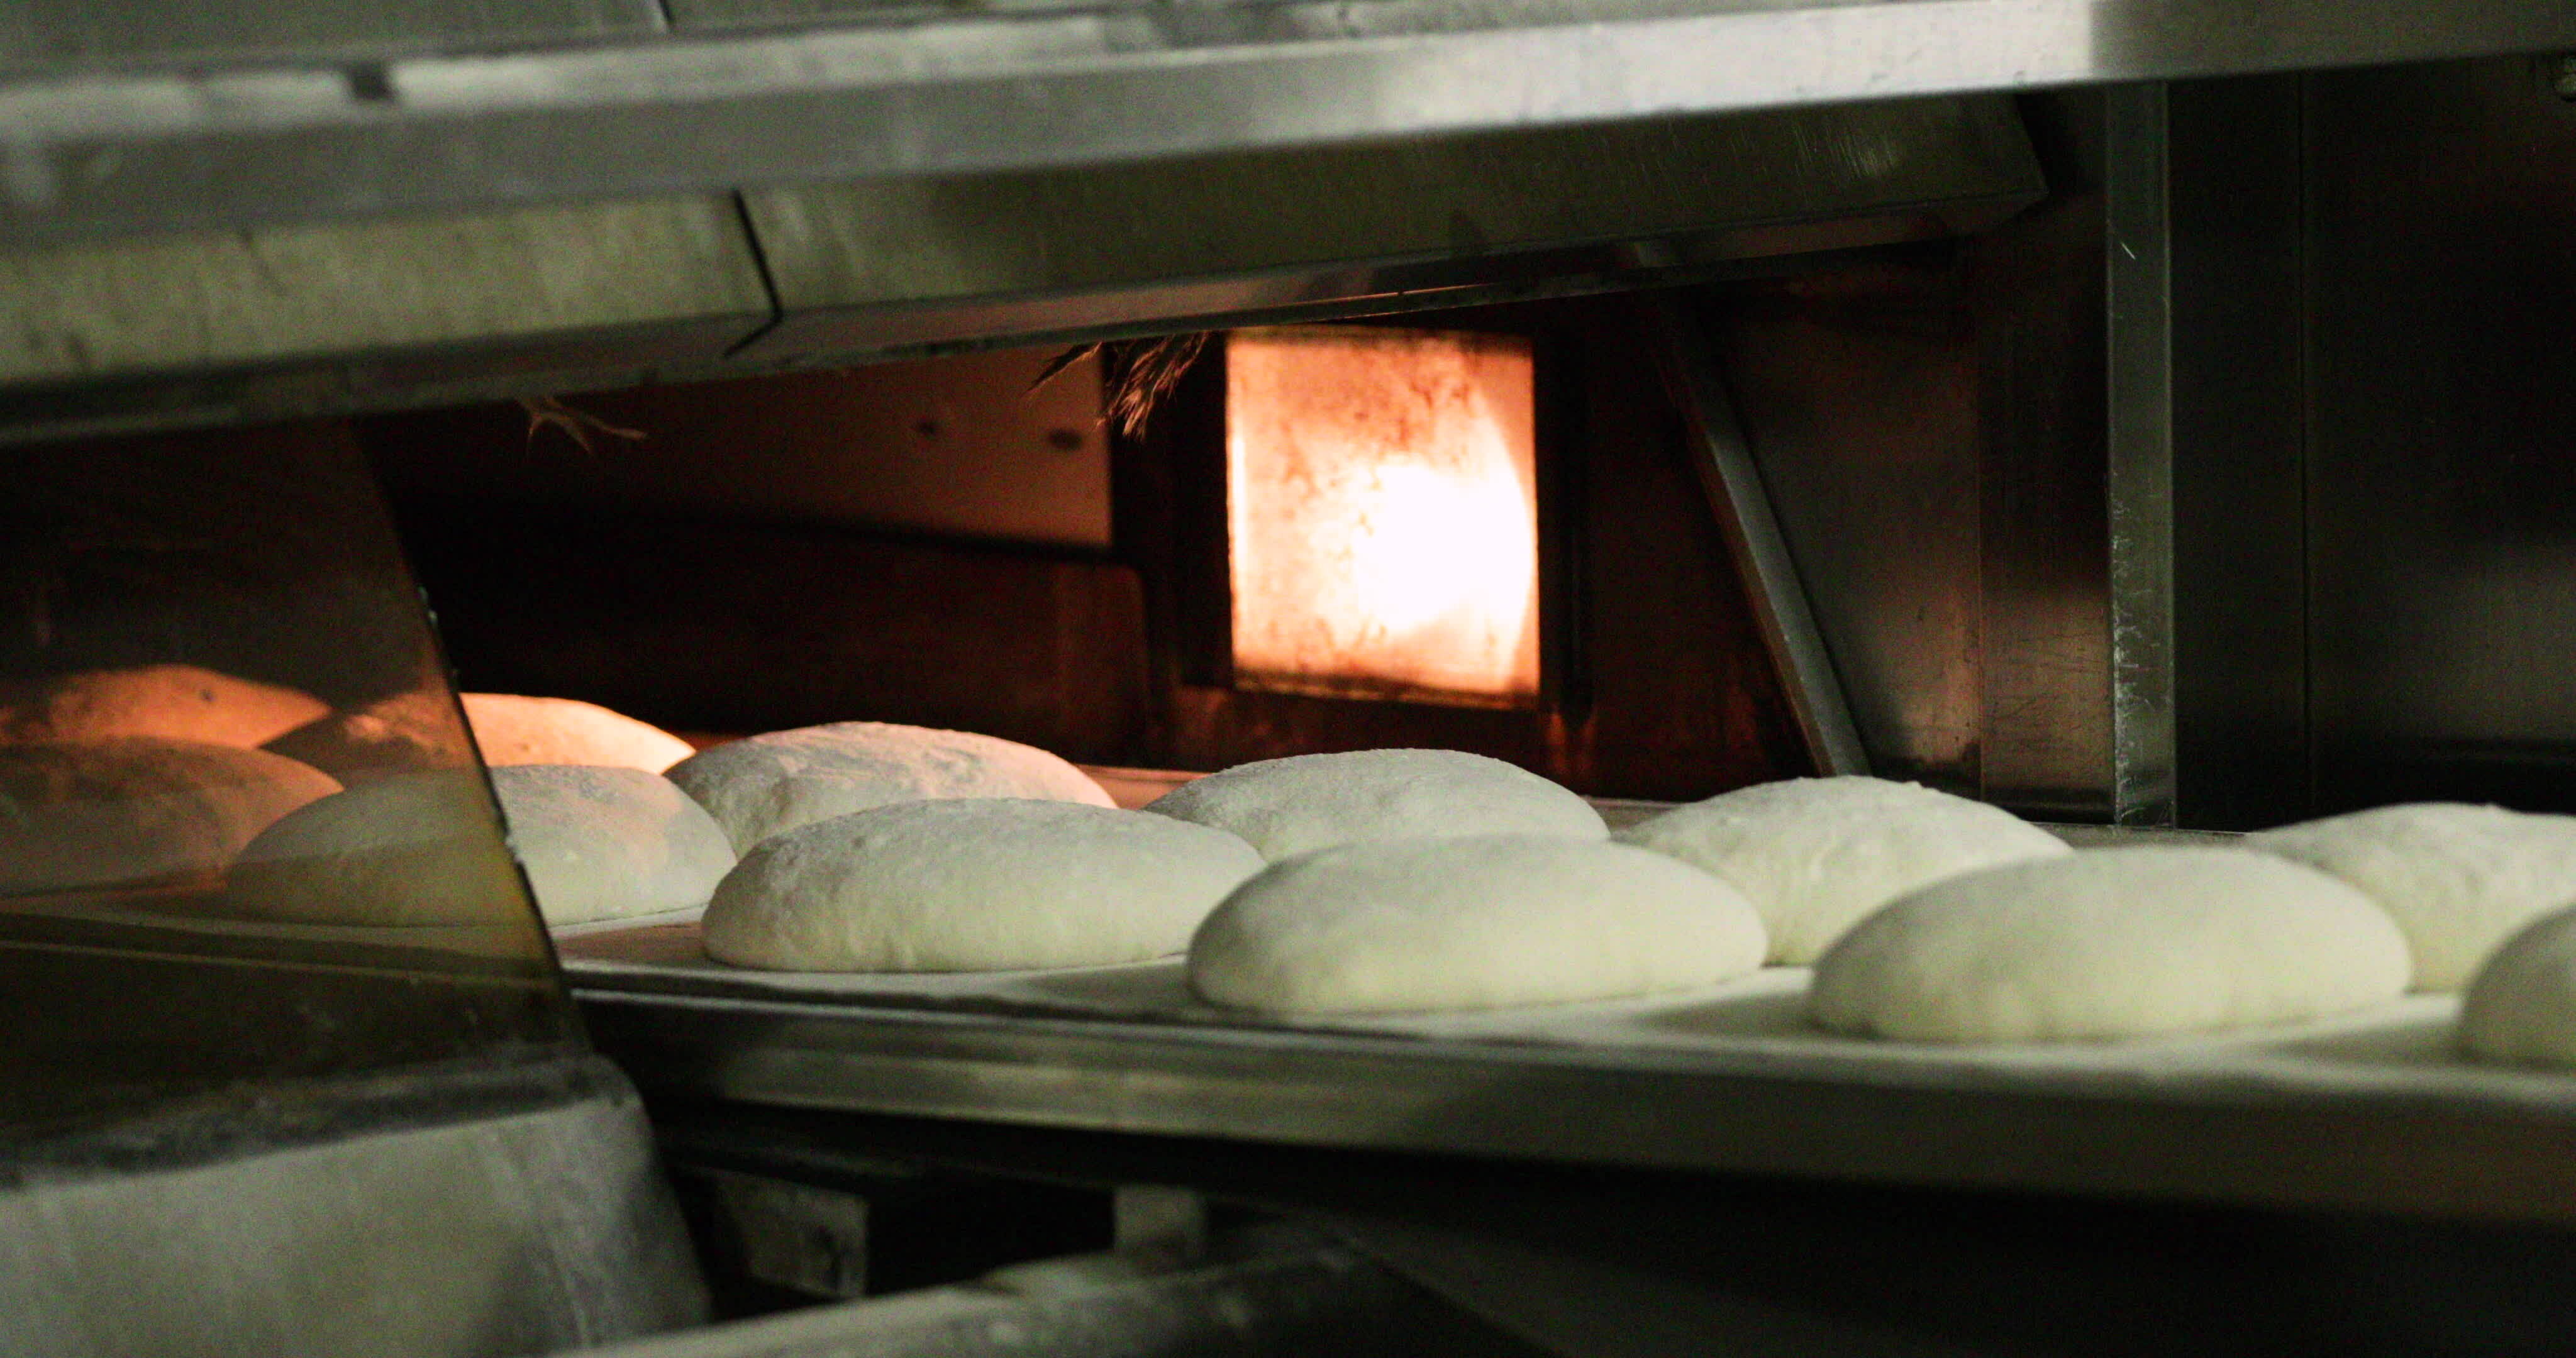 Bread/Bun Baking Oven, For Bakery